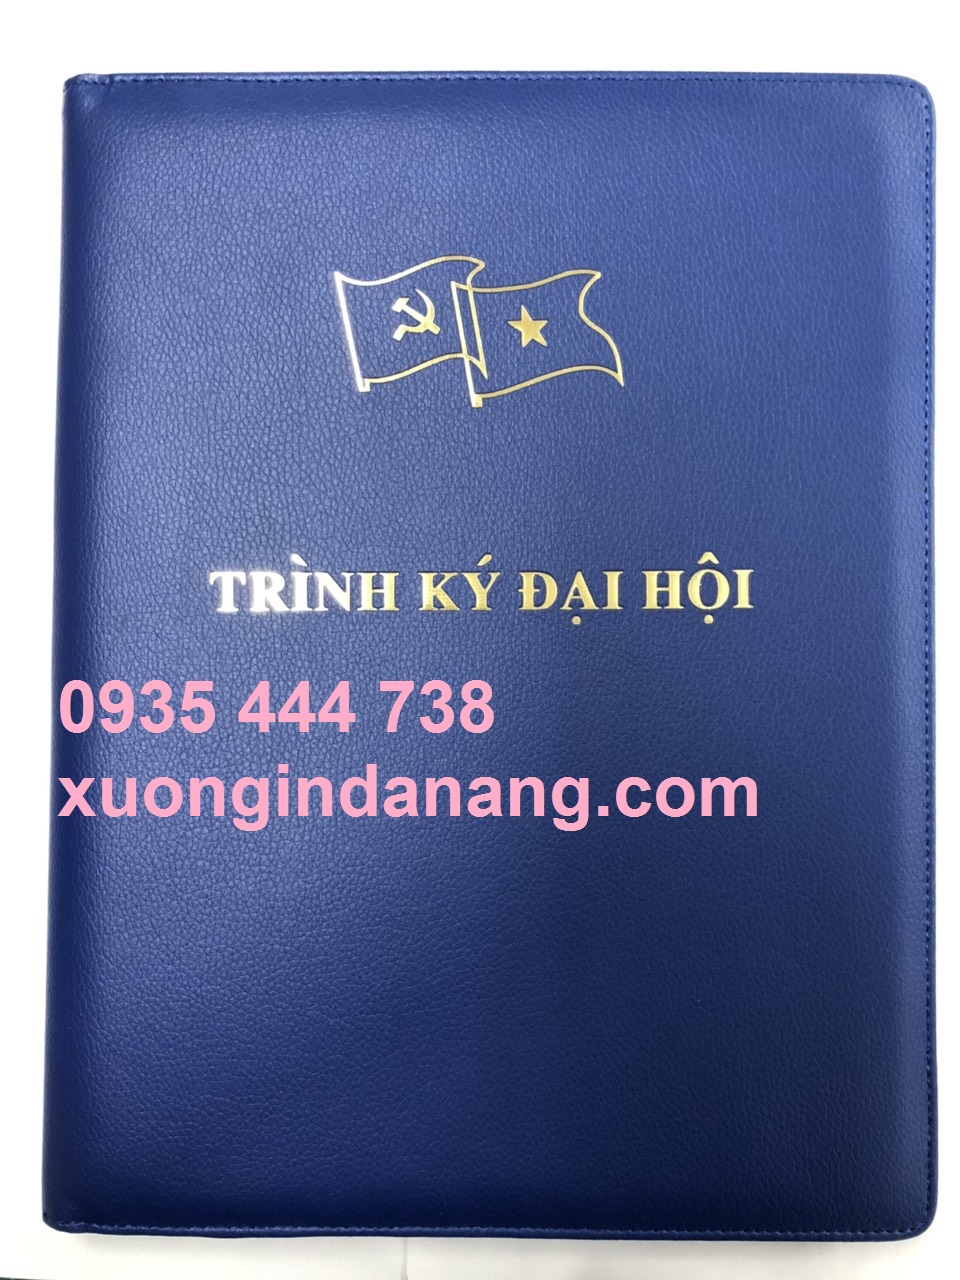 Sản xuất sổ da in logo giá rẻ tại Đà Nẵng, sổ da cao cấp tại Đà Nẵng